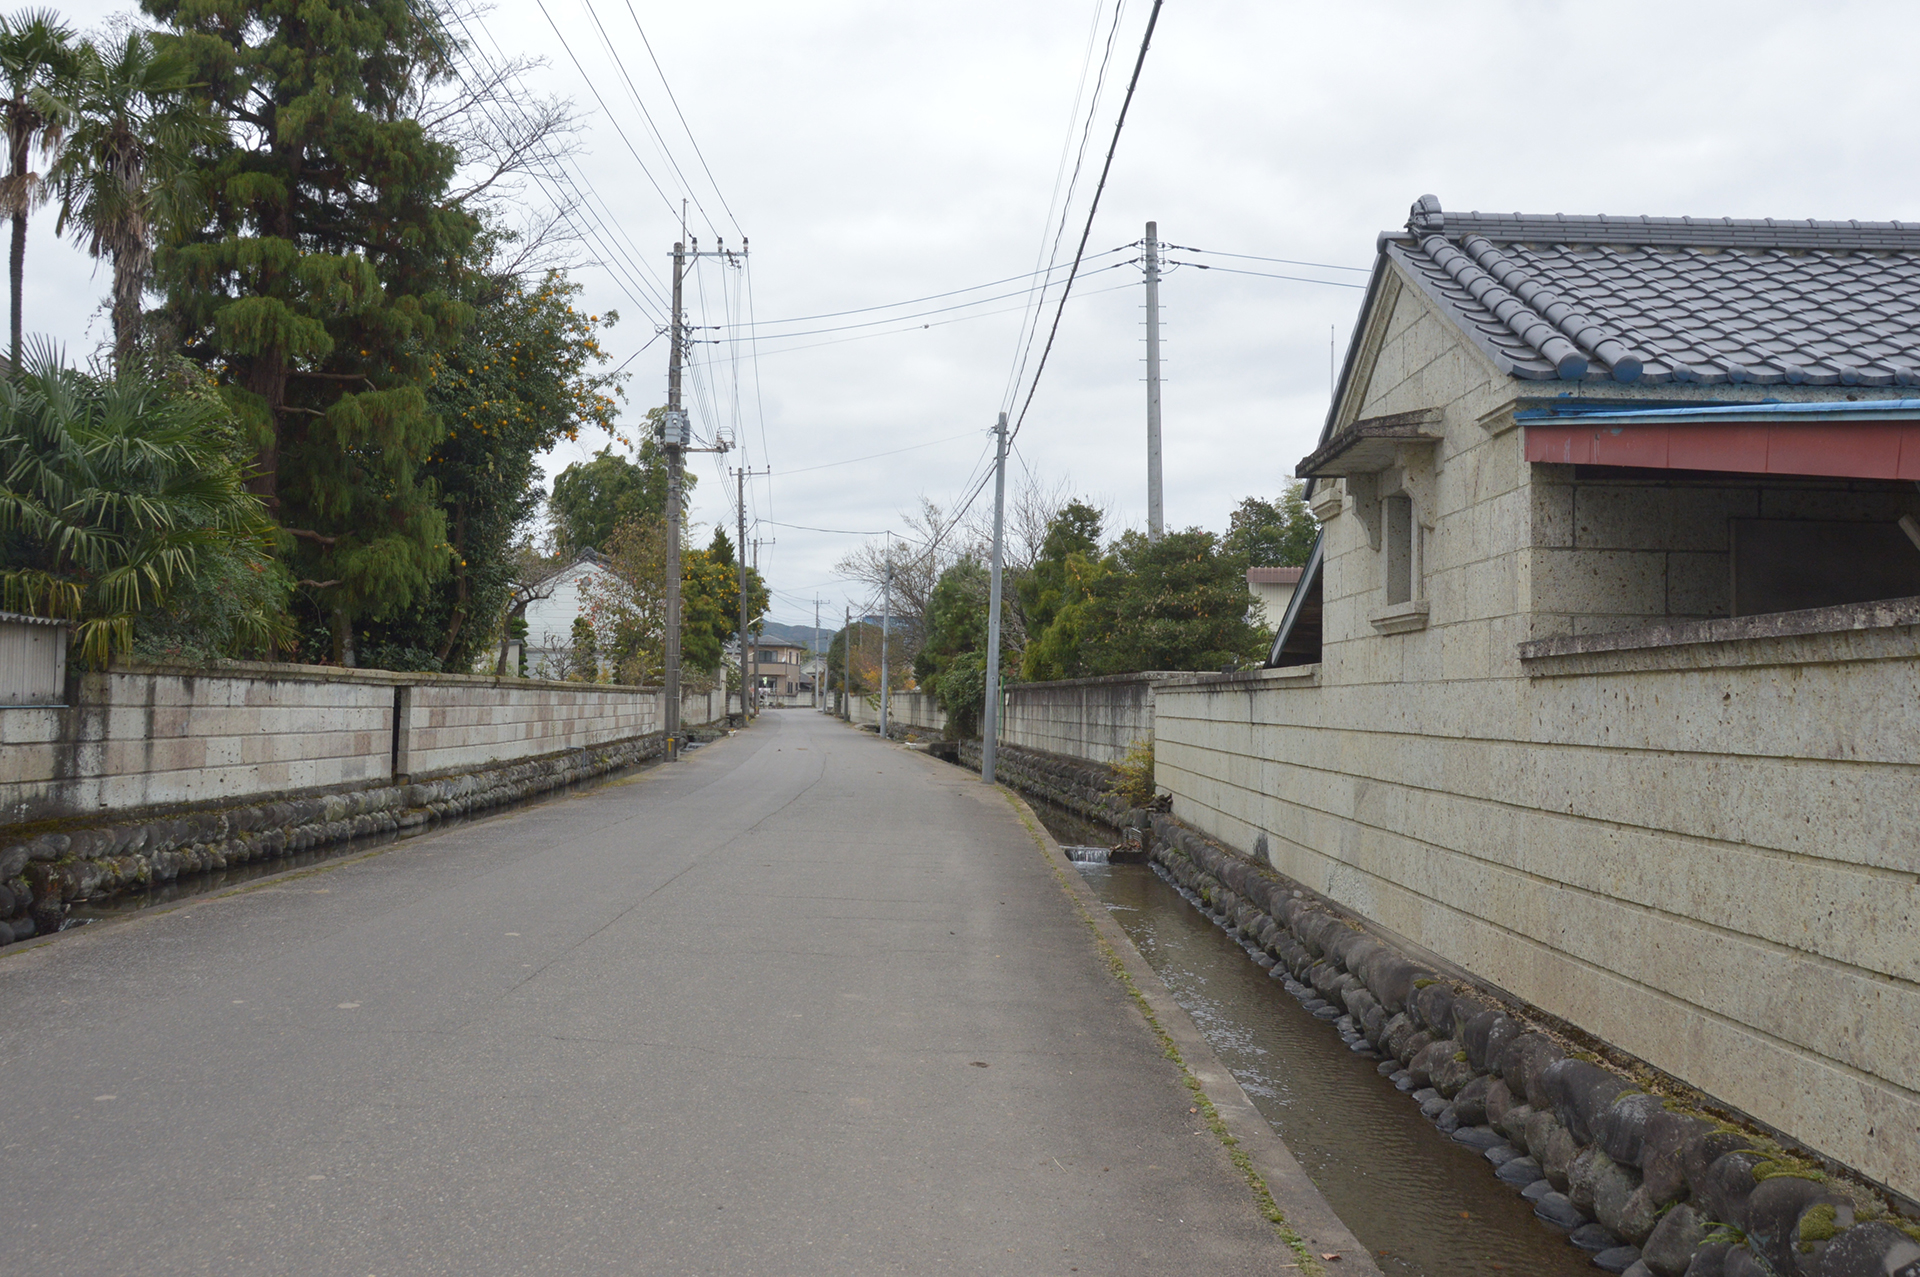 Ueda village